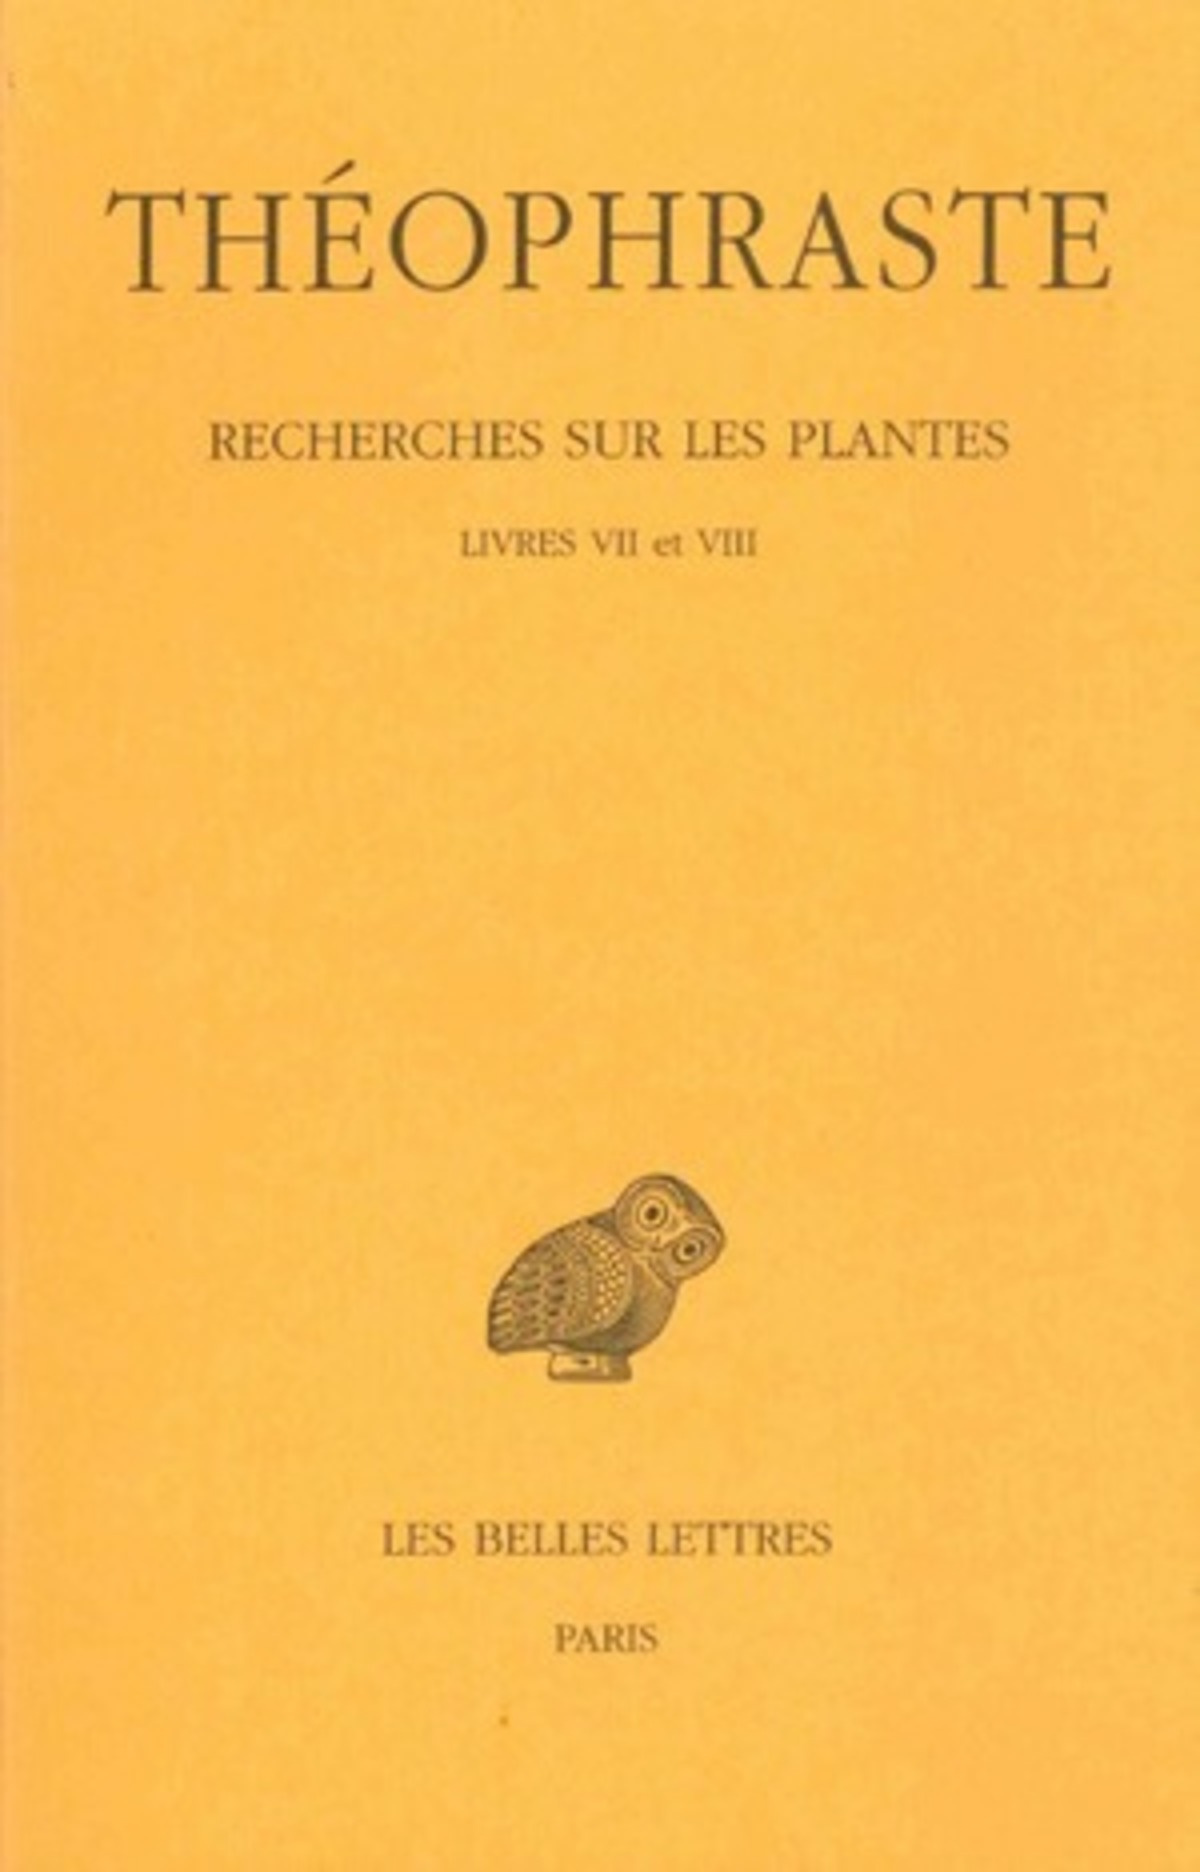 Recherches sur les plantes. Tome IV : Livres VII et VIII